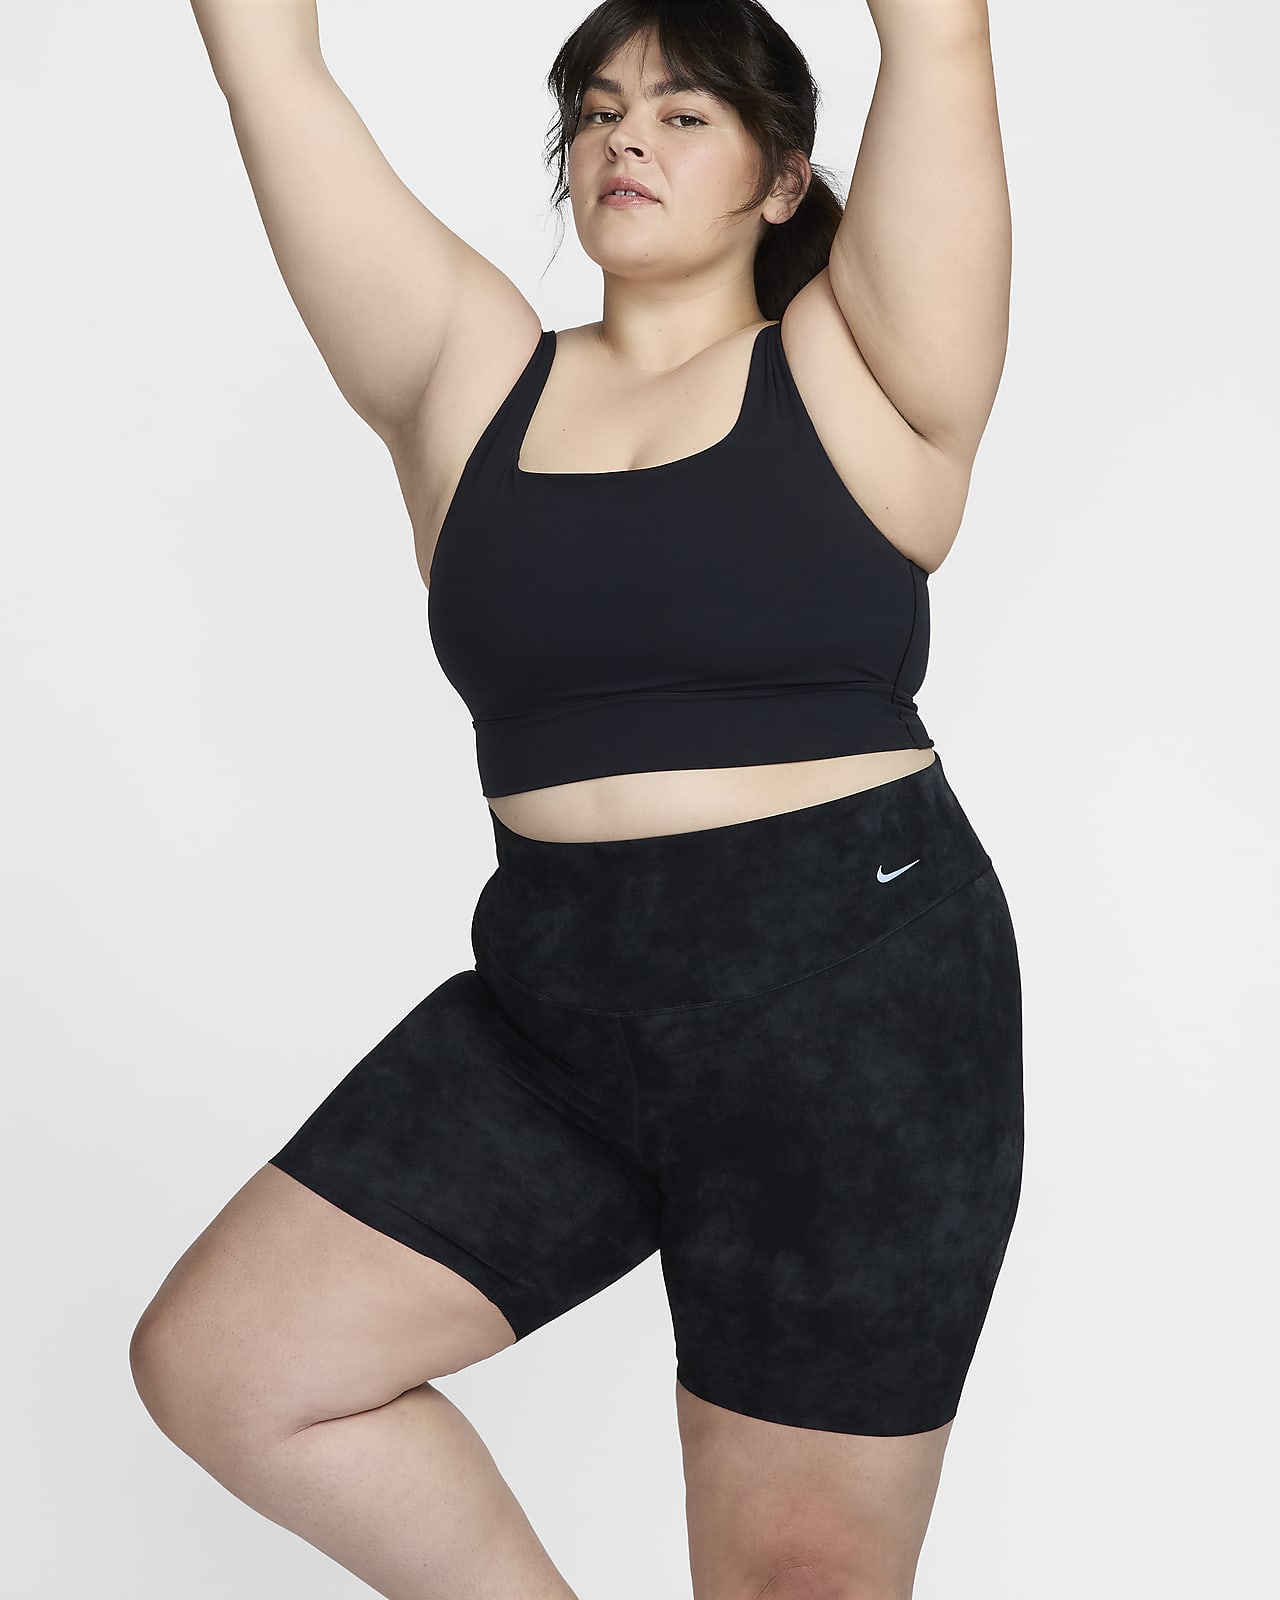 Nike Zenvy Tie-Dye Women's Gentle-Support High-Waisted 8" Biker Shorts (Plus Size)